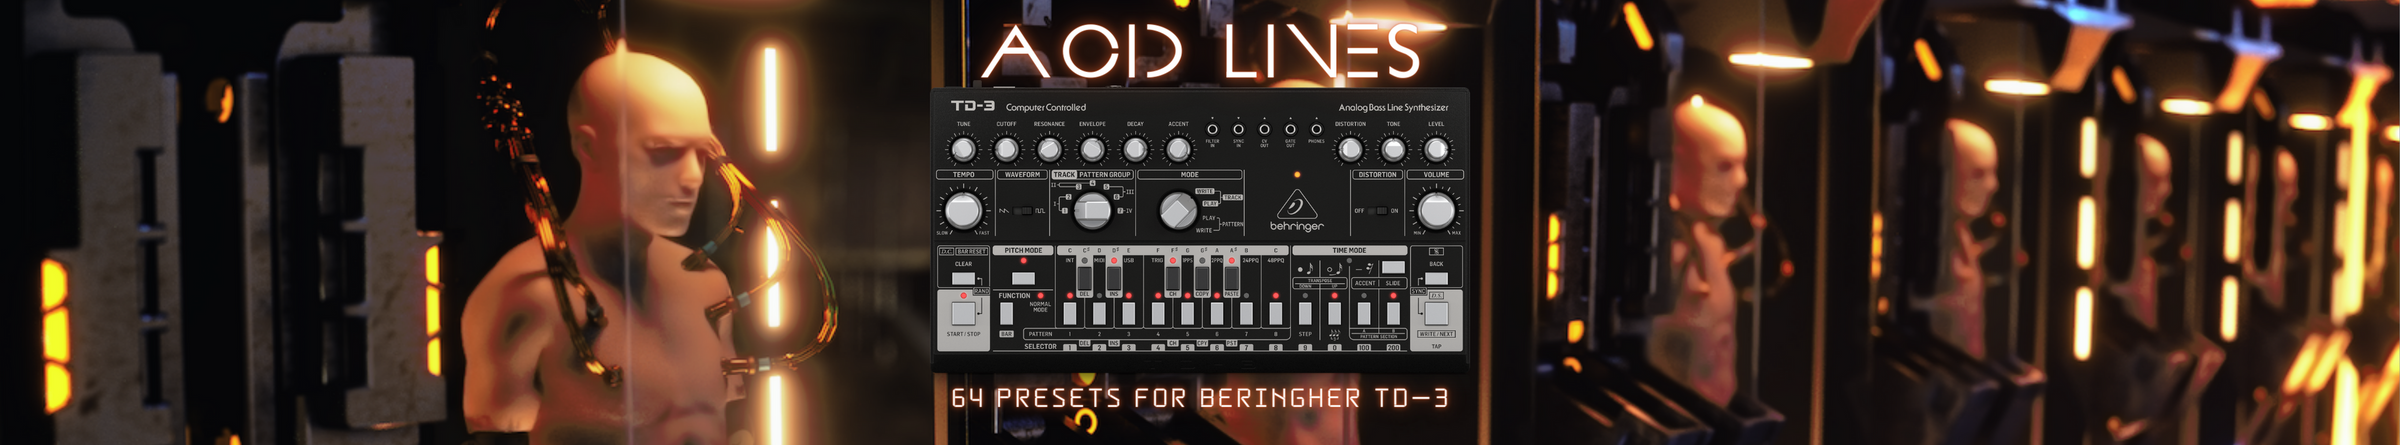 Acid Lines for Beringher TD-3